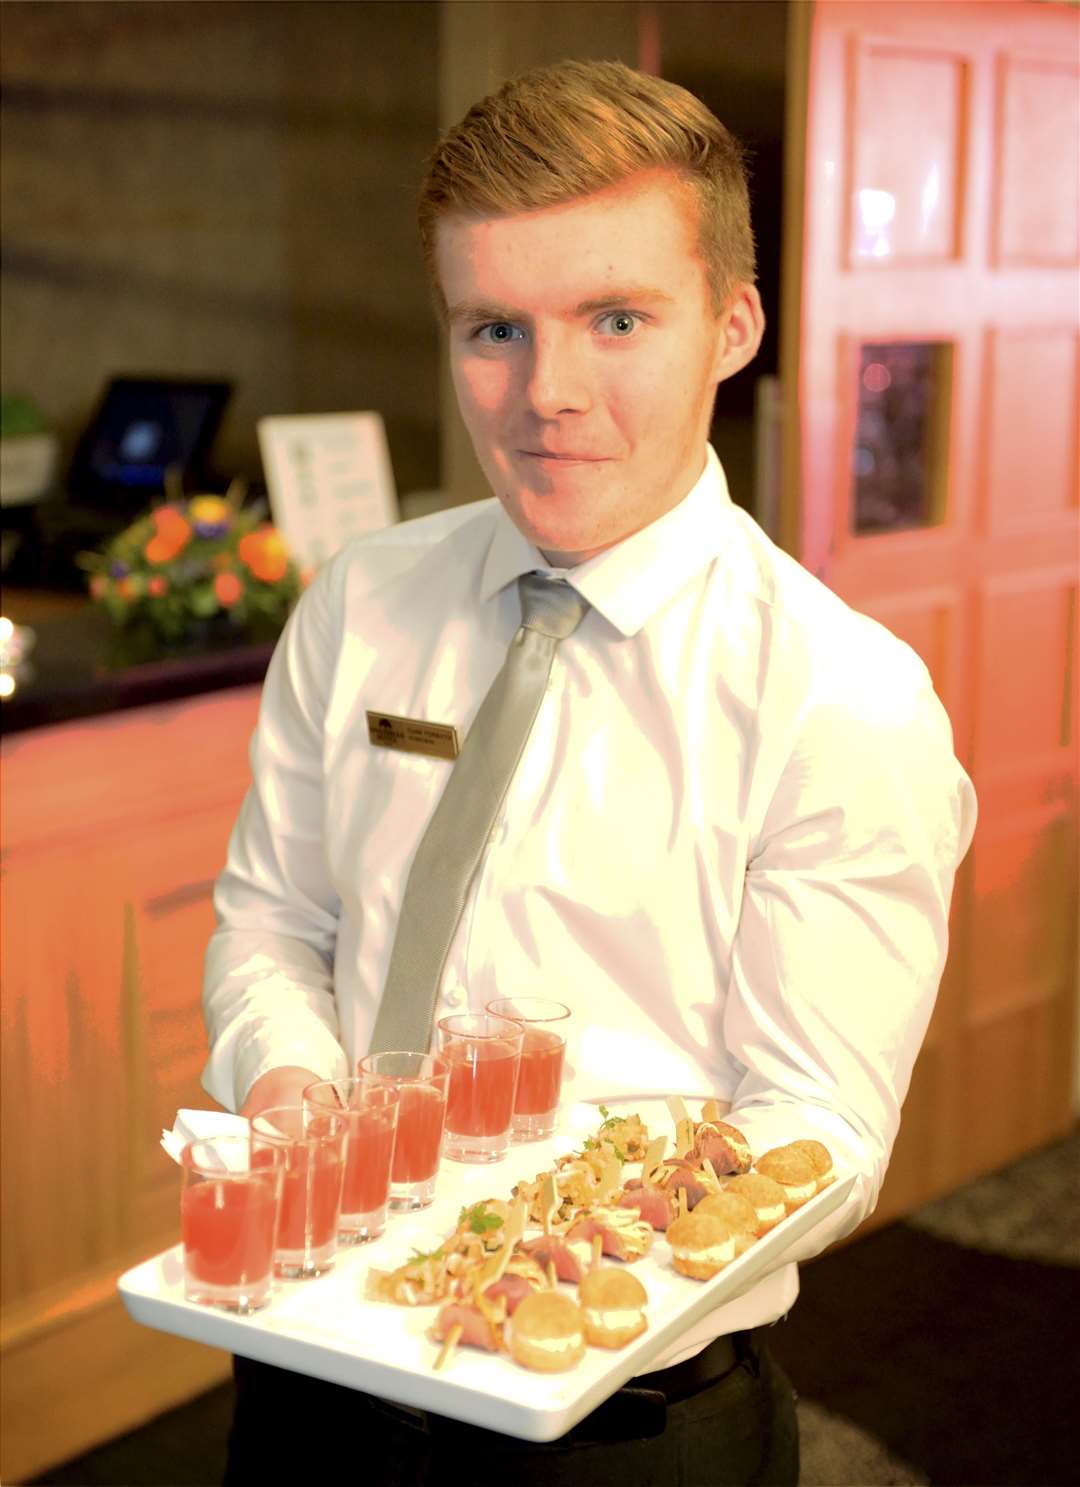 Highlands & Islands Food & Drink Awards 2019 at the Kingsmills Hotel..Evan Forsyth, waiter at Kingsmills Hotel..Picture: James MacKenzie..